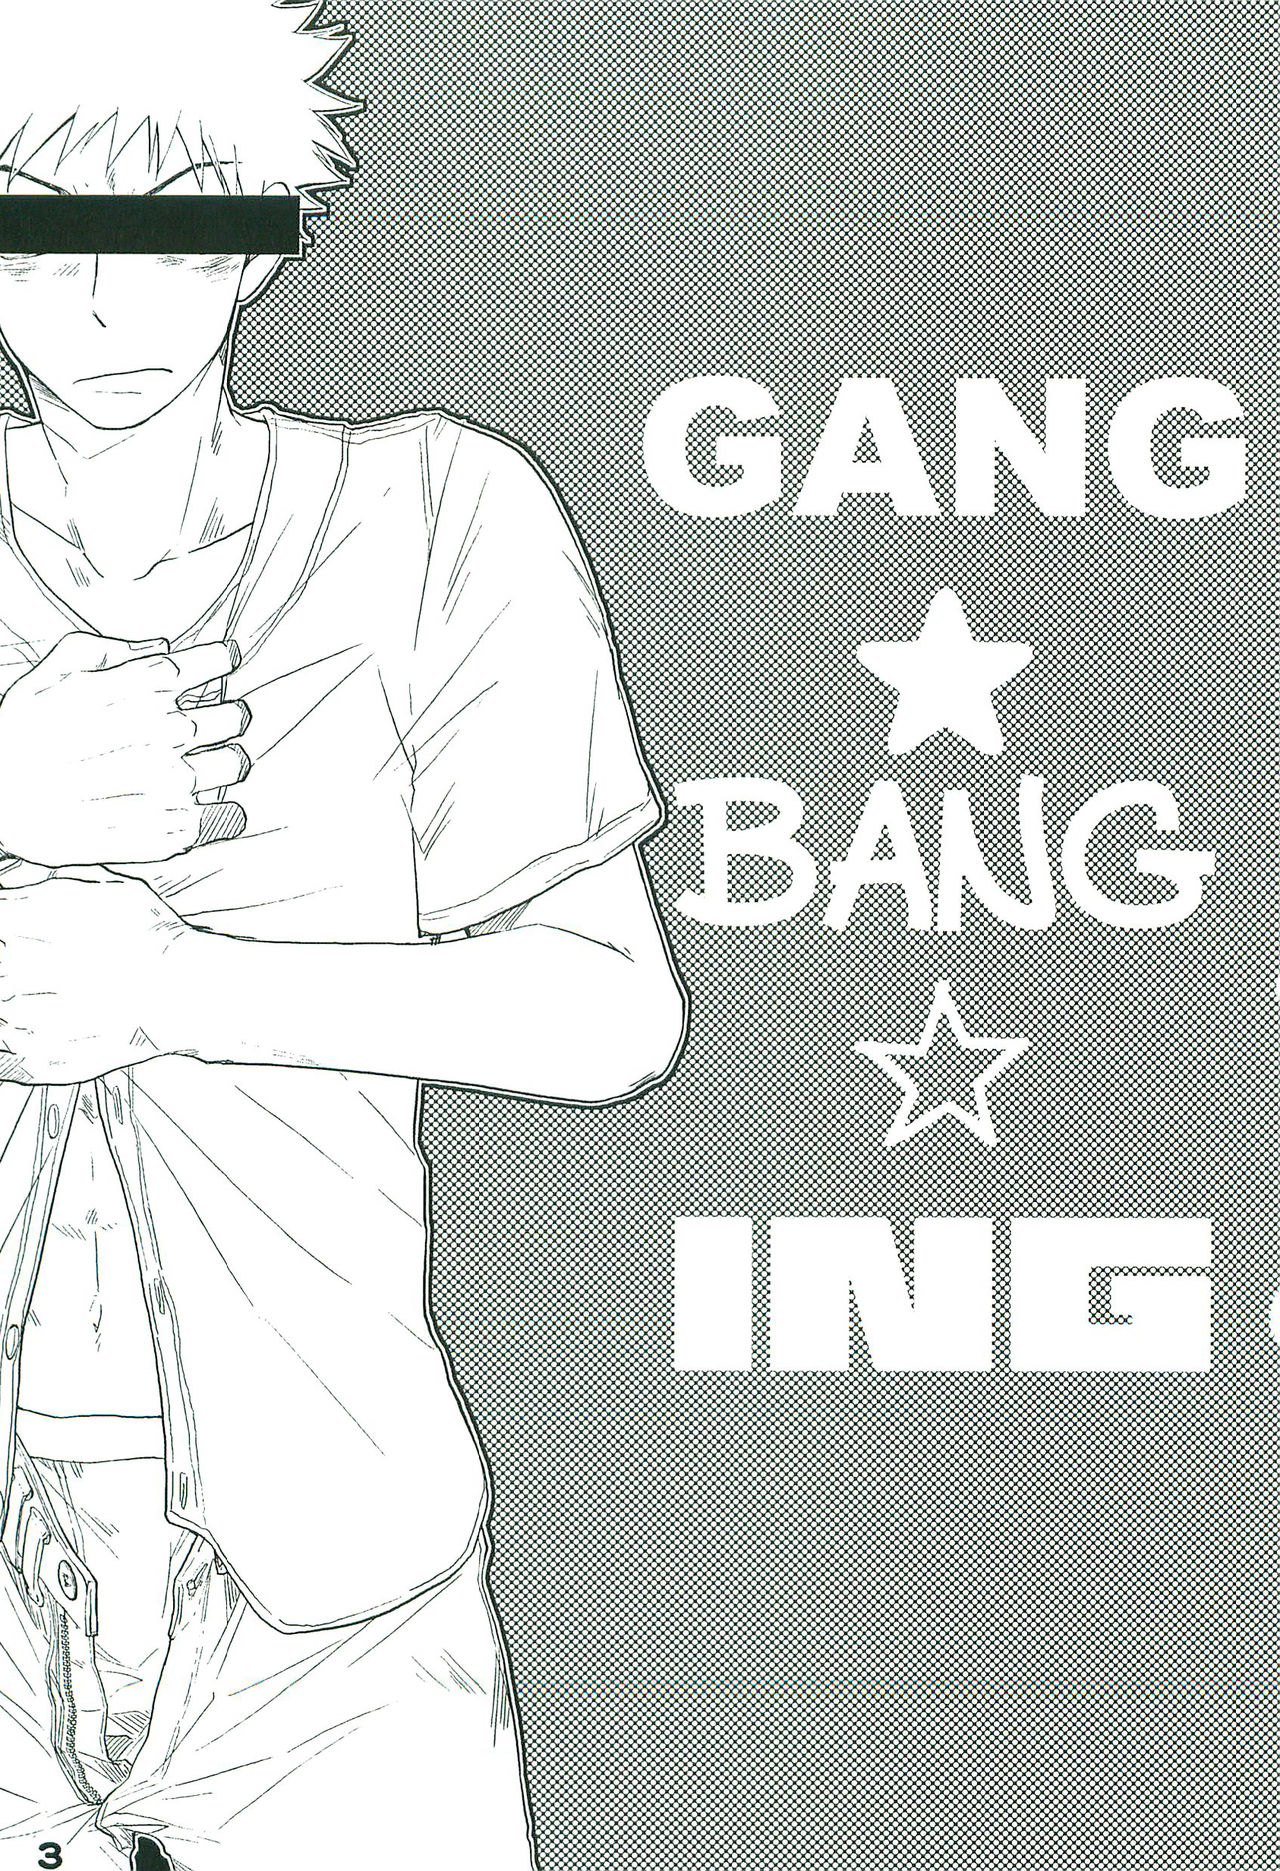 [L&Pブルー (ニジ)] GANG BANG ING (おおきく振りかぶって) [2012年8月11日]